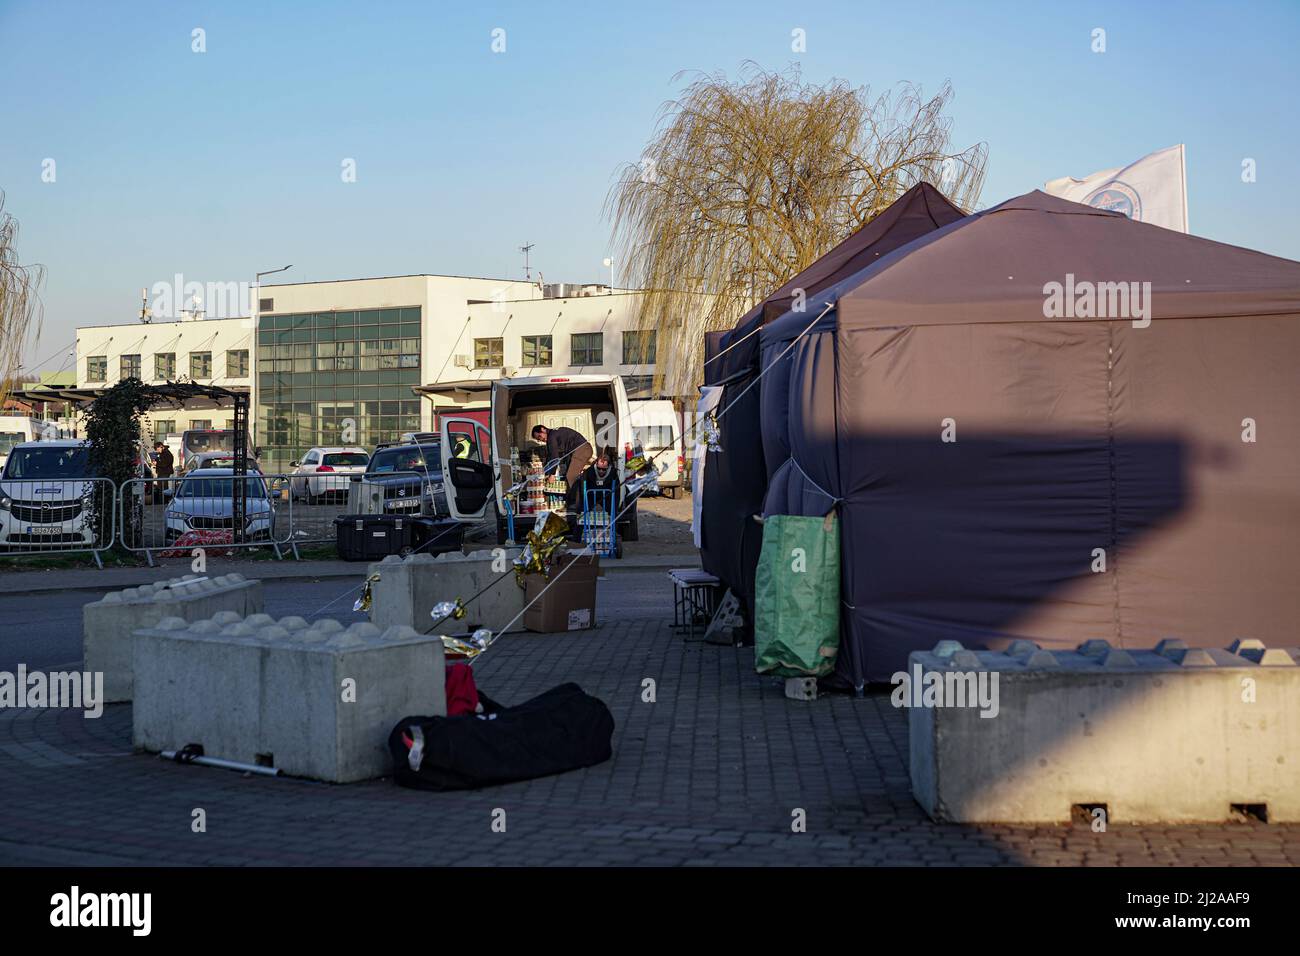 MEDYKA, POLEN - 28. MÄRZ 2022 - am Checkpoint Medyka-Shehyni an der ukrainisch-polnischen Grenze sind Zelte abgebildet, die von ukrainischen Flüchtlingen auf der Flucht genutzt werden Stockfoto